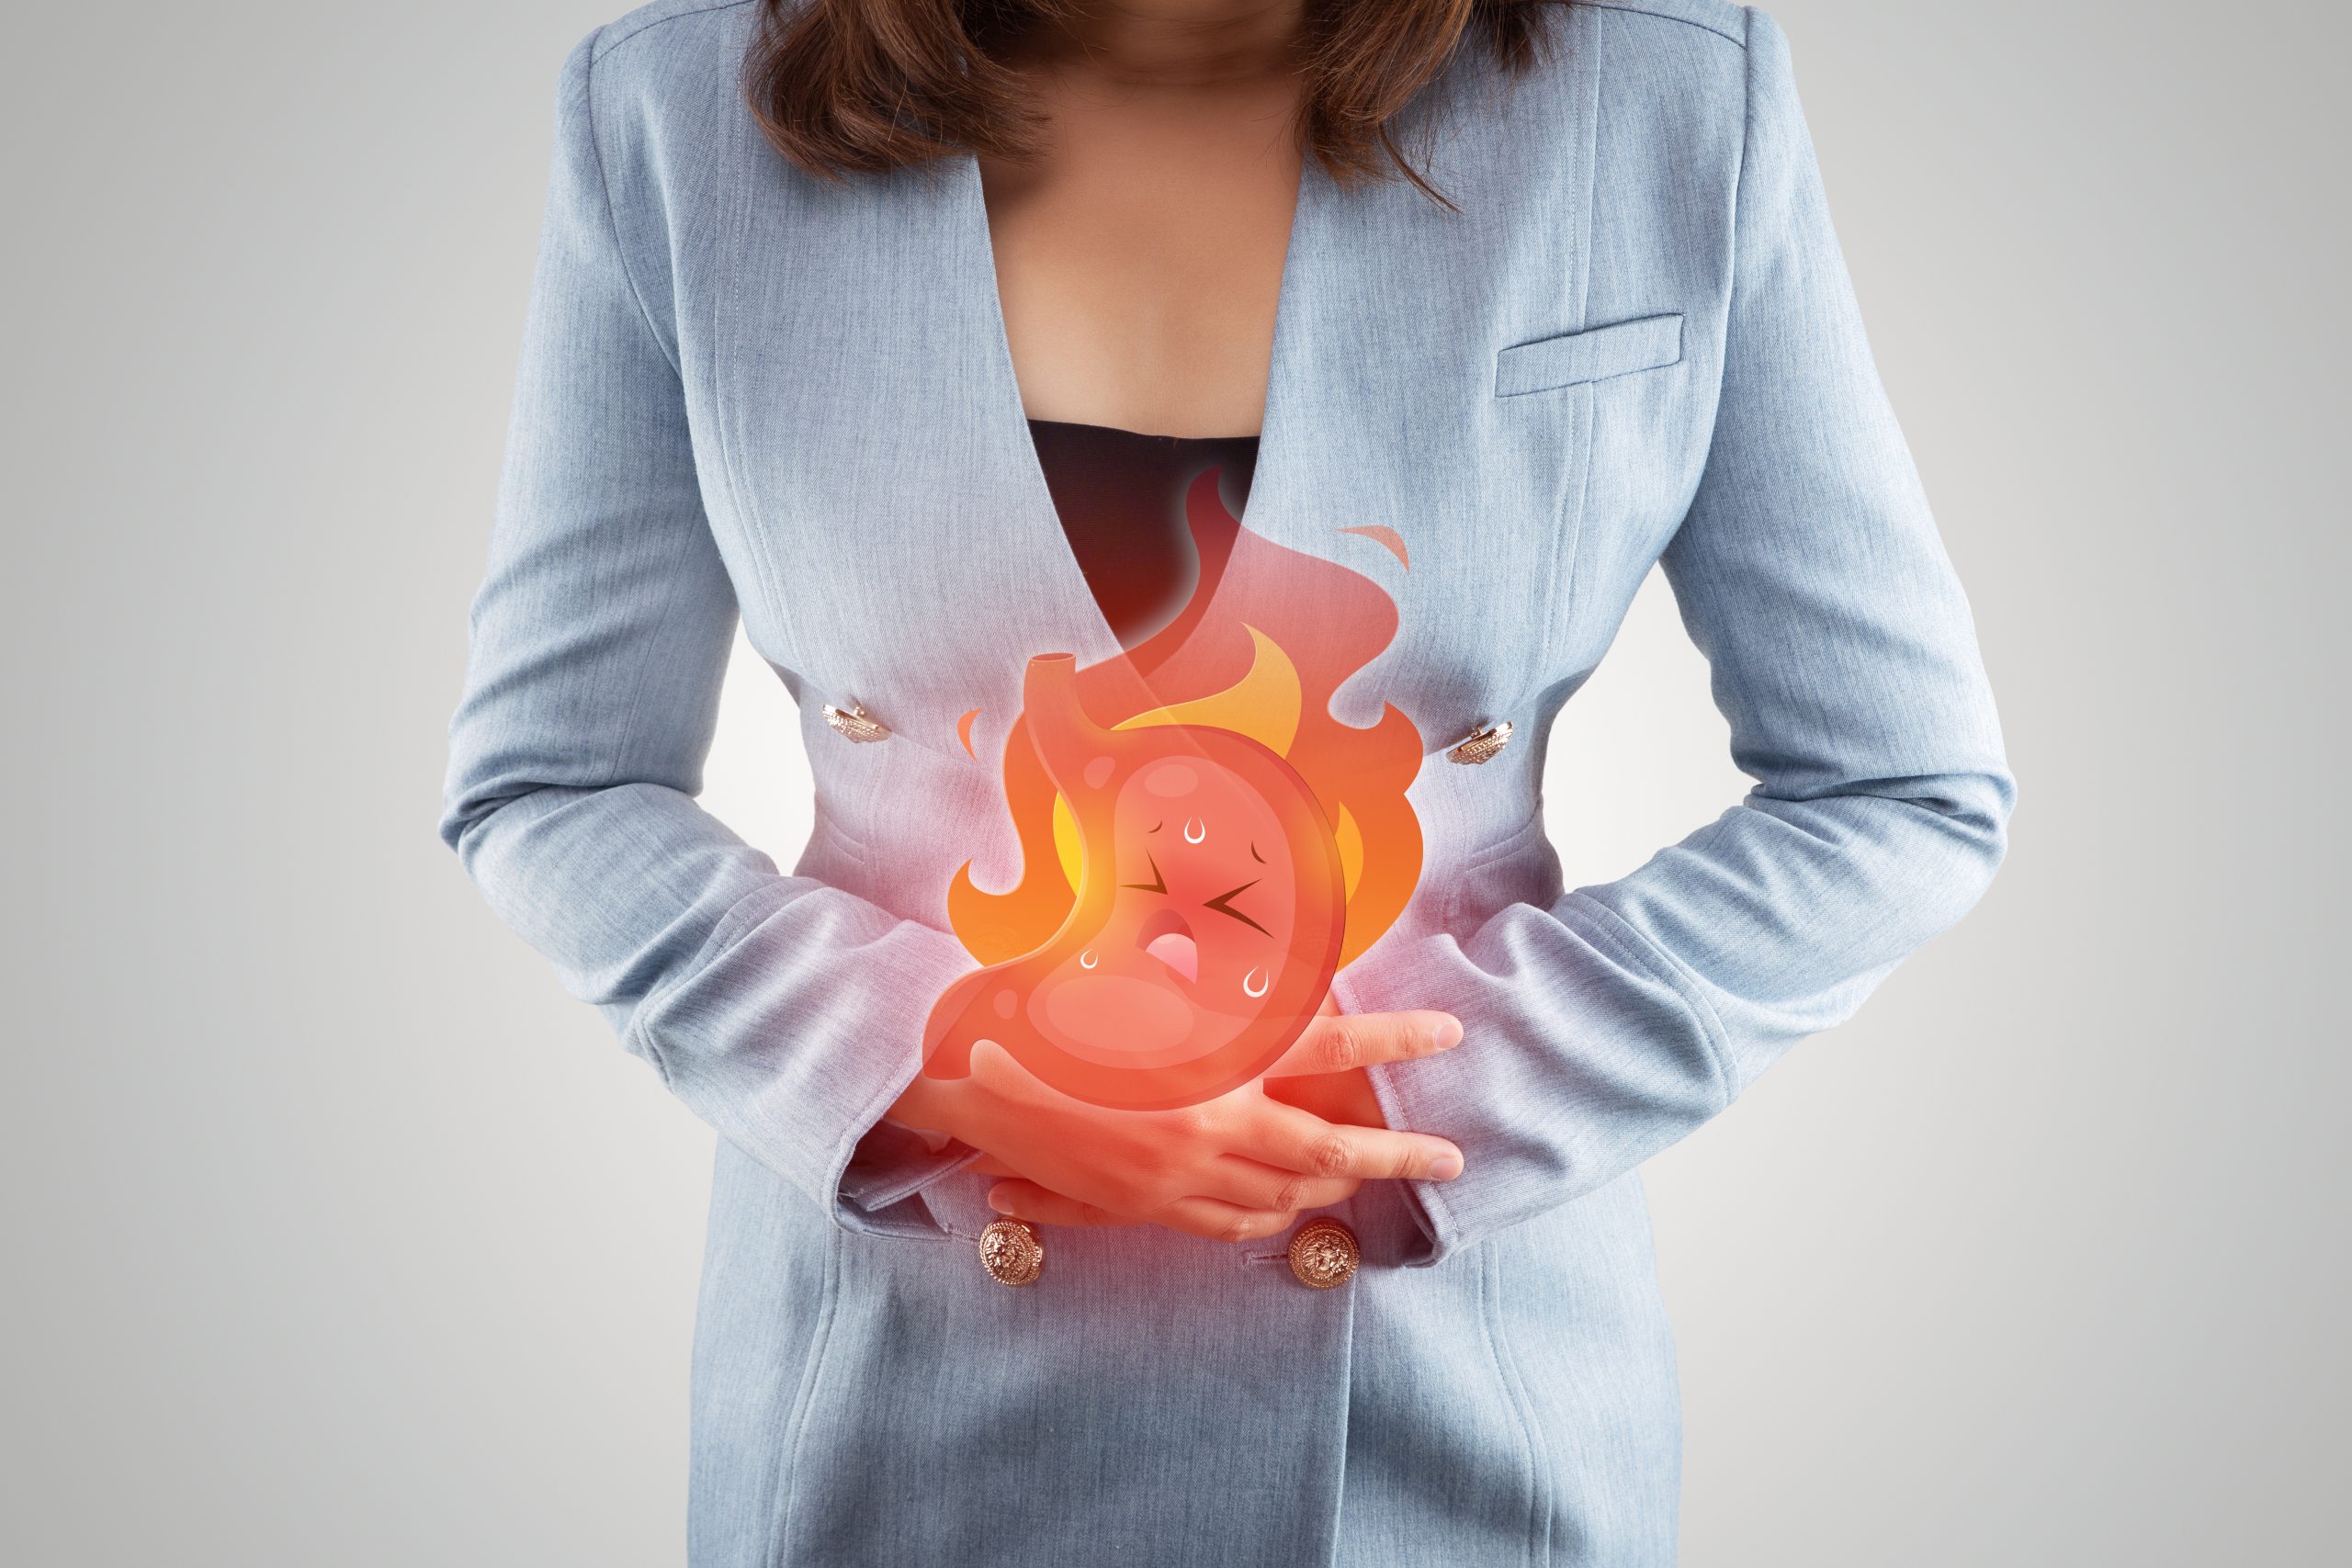 Reflusso gastroesofageo: come combattere il bruciore e l’acidità